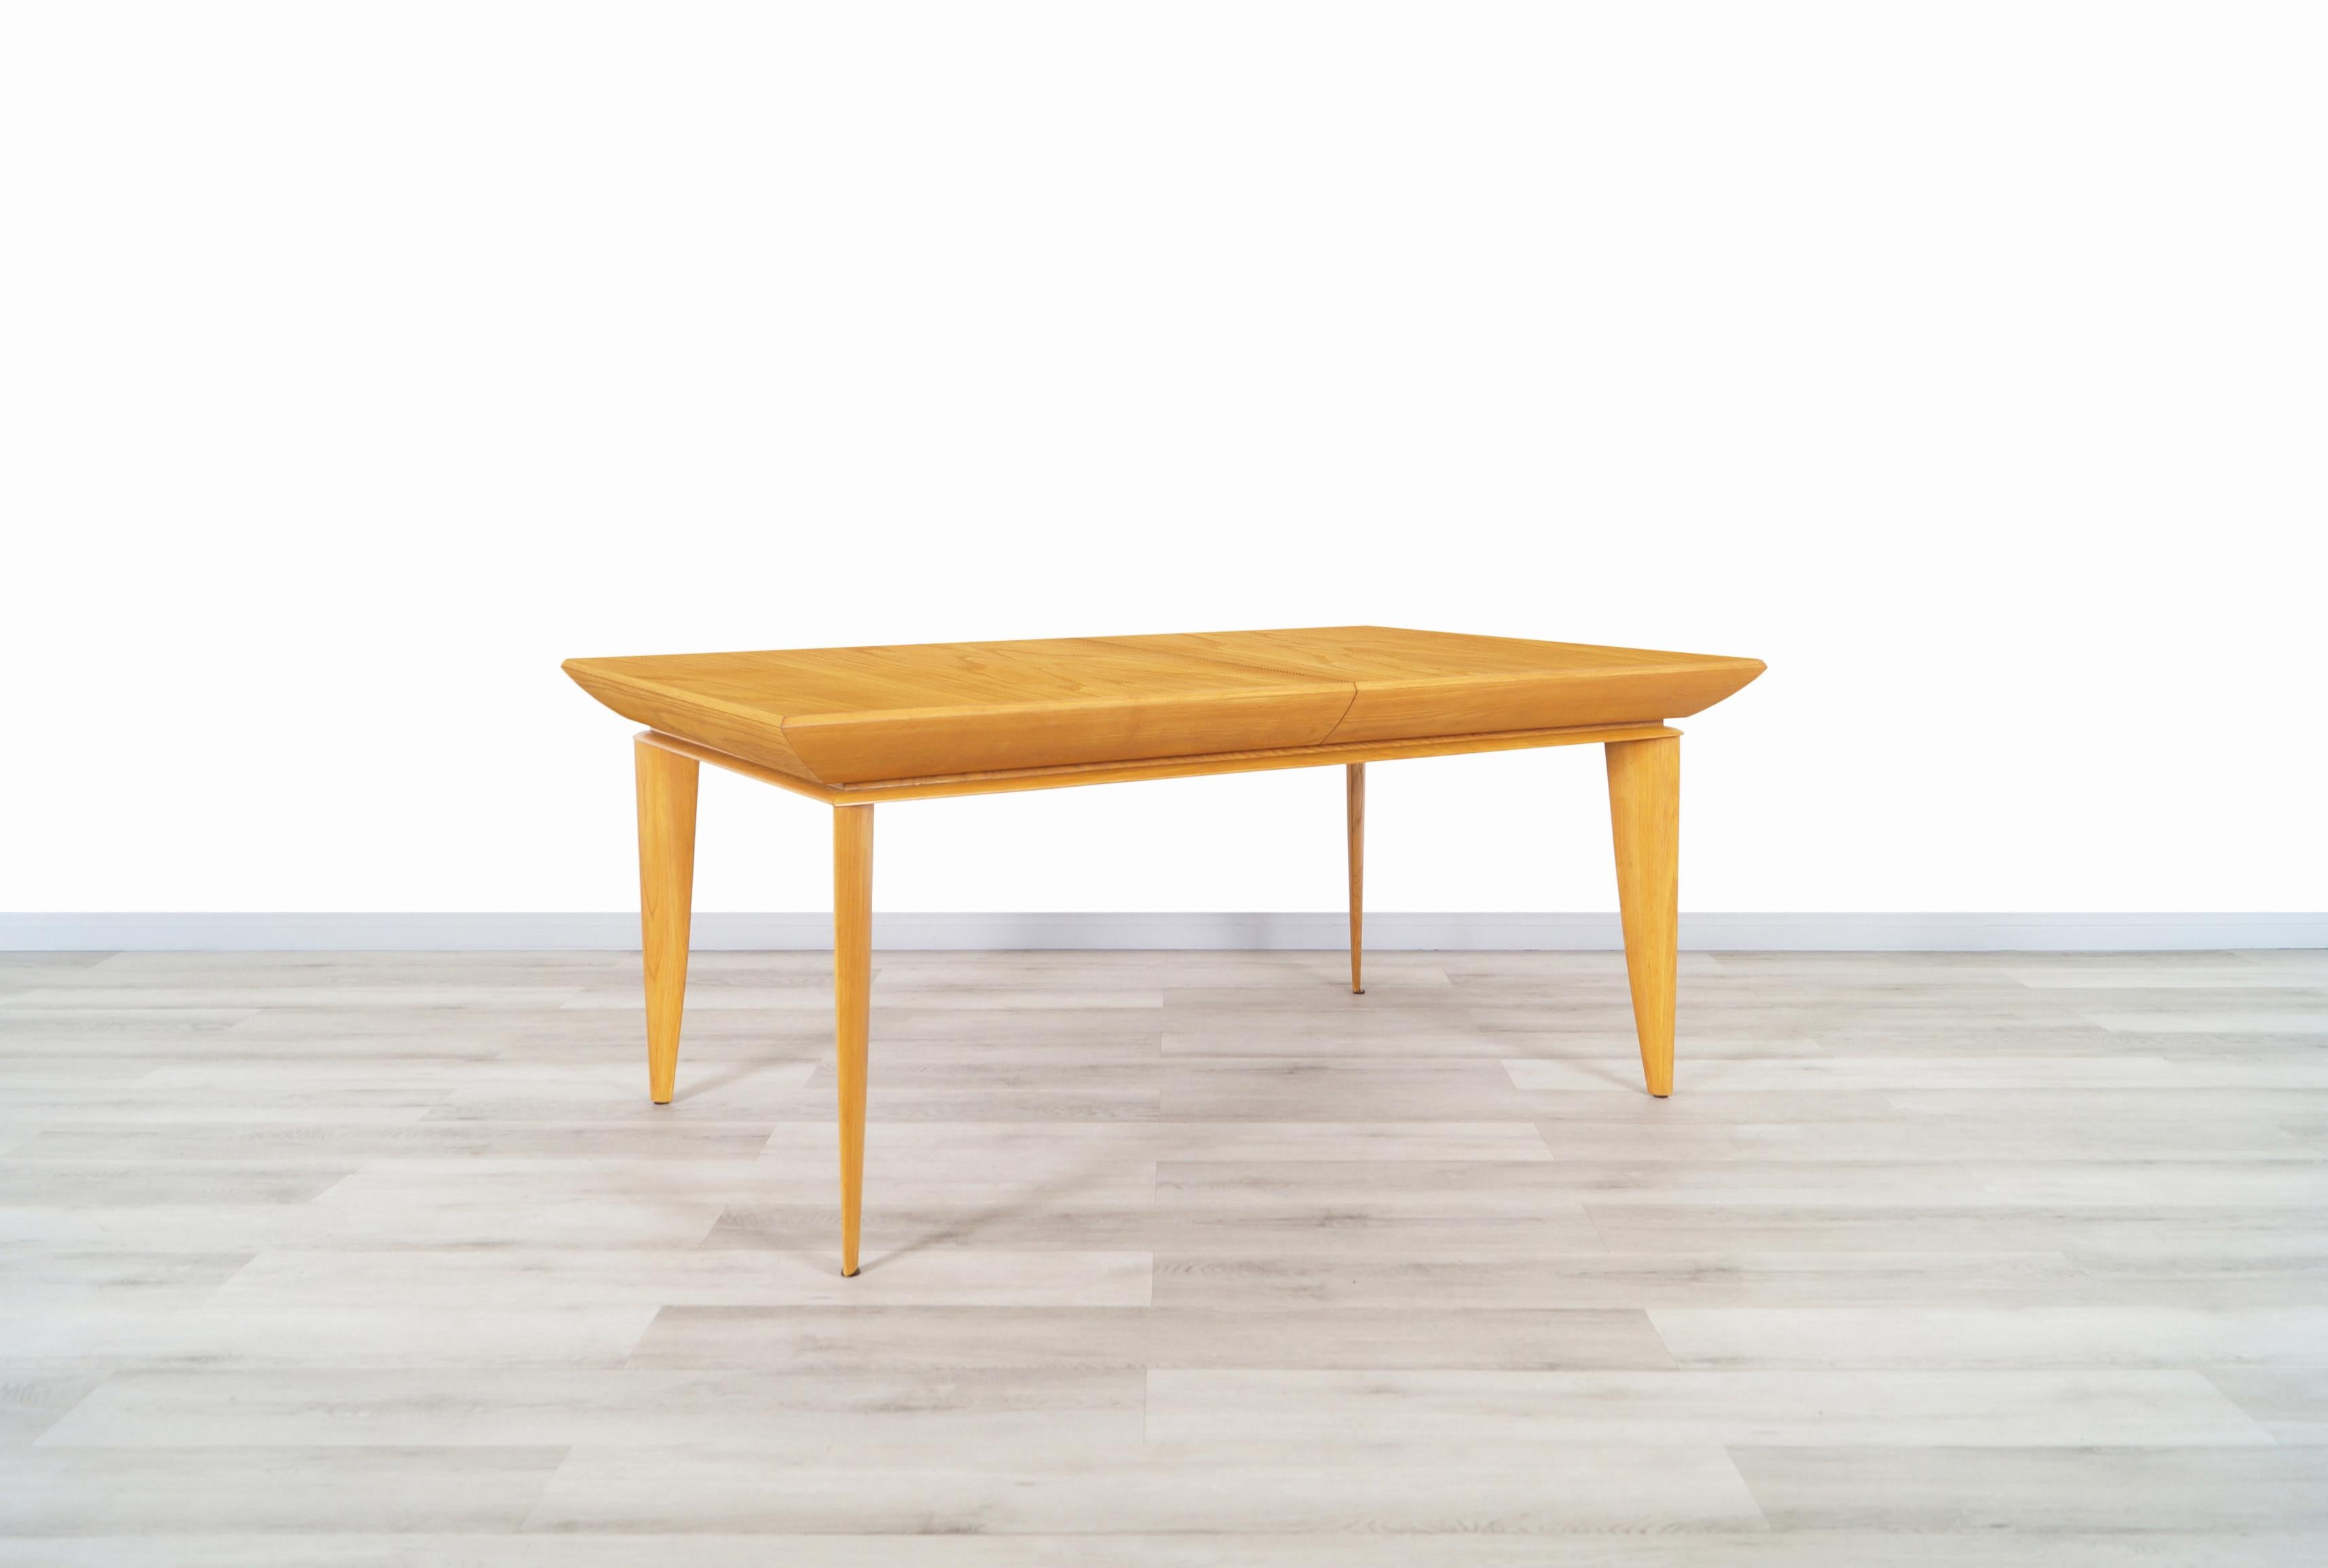 Table à manger vintage en chêne en expansion conçue par l'architecte et designer de meubles Paul Laszlo pour Brown Saltman aux États-Unis. Cette table de salle à manger spectaculaire présente un corps en bois de chêne avec des pieds en forme de